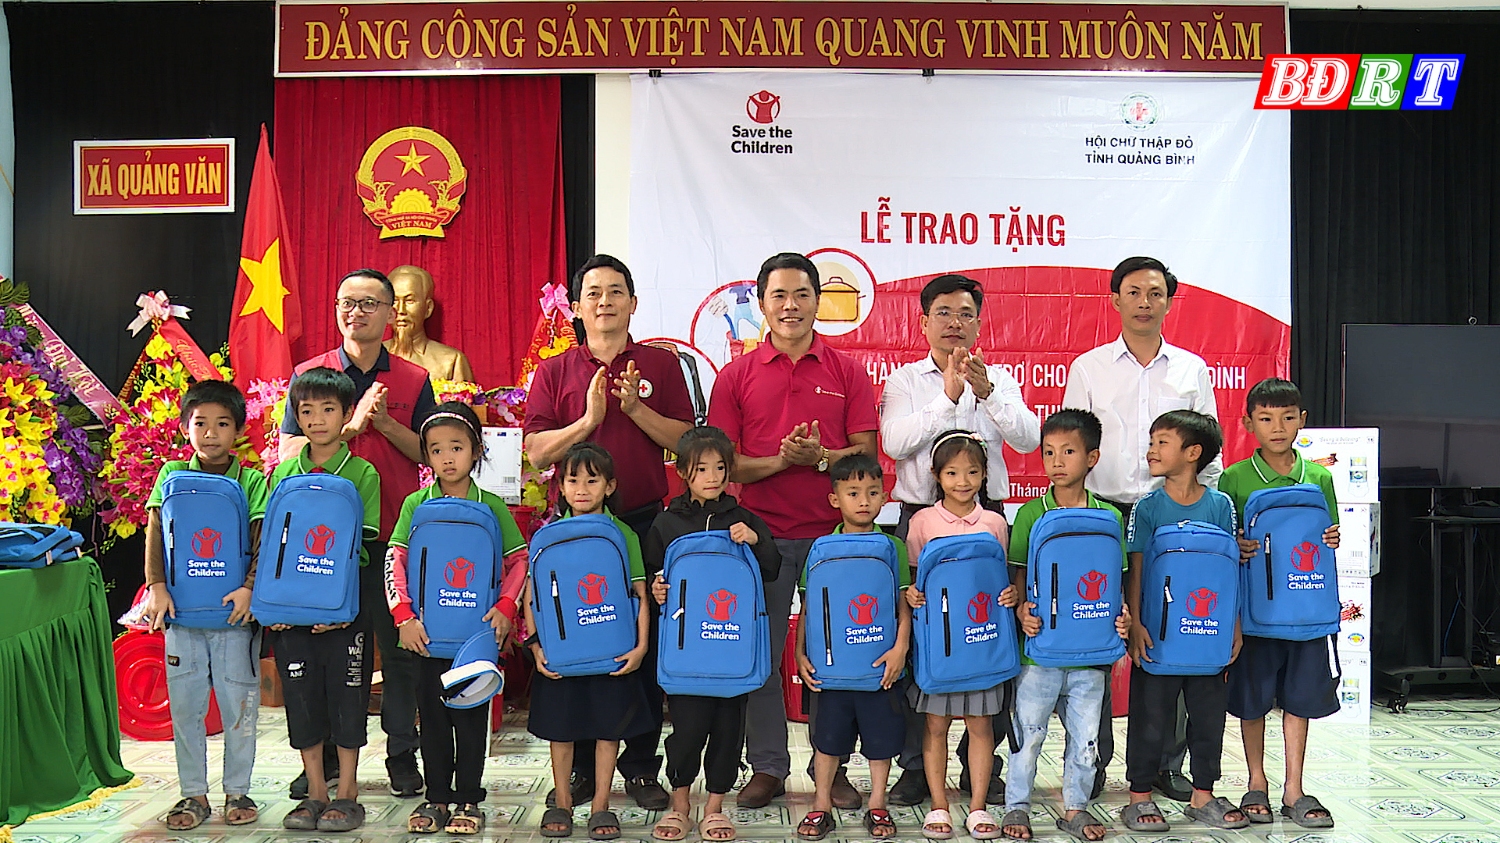 Hội chữ thập đỏ tỉnh Quảng Bình phối hợp với Hội chữ thập đỏ thị xã Ba Đồn trao bộ đồ dùng học tập cho các em học sinh.